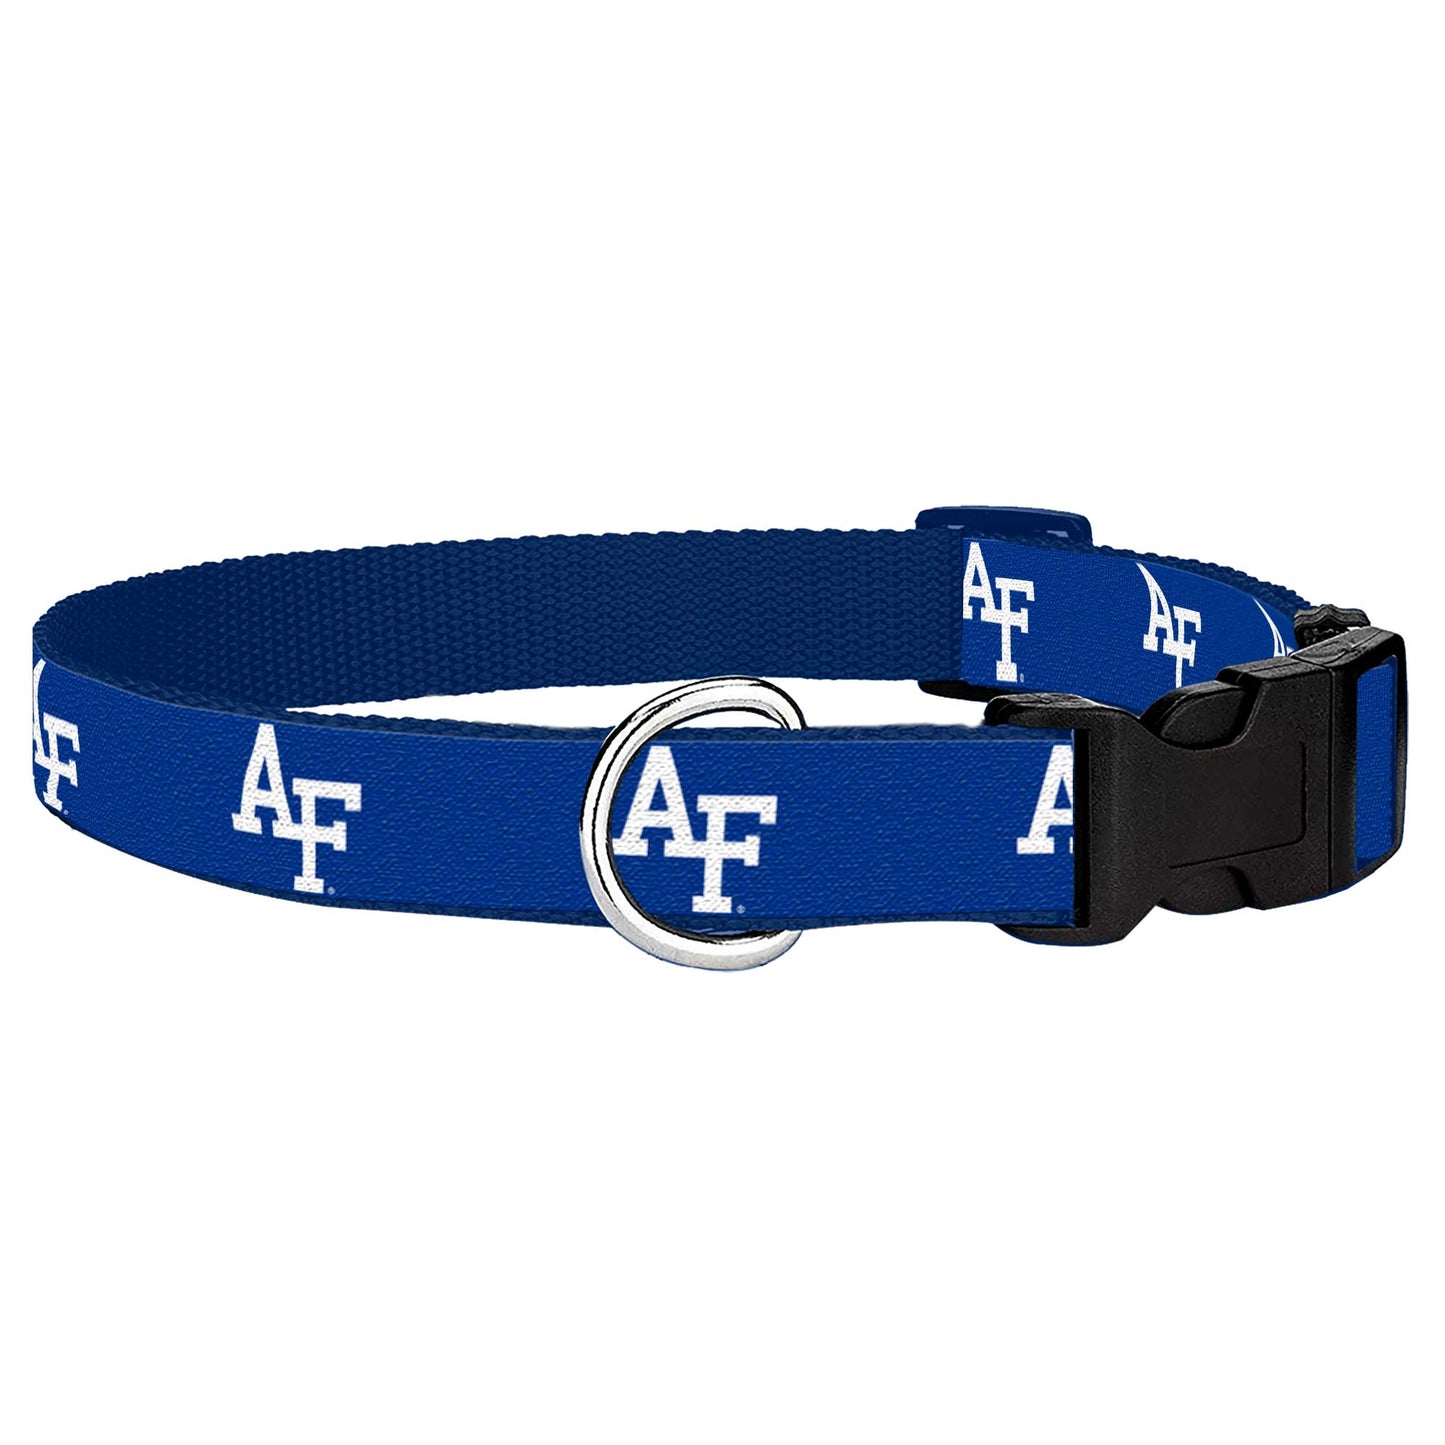 SM AF Ribbon Dog Collar